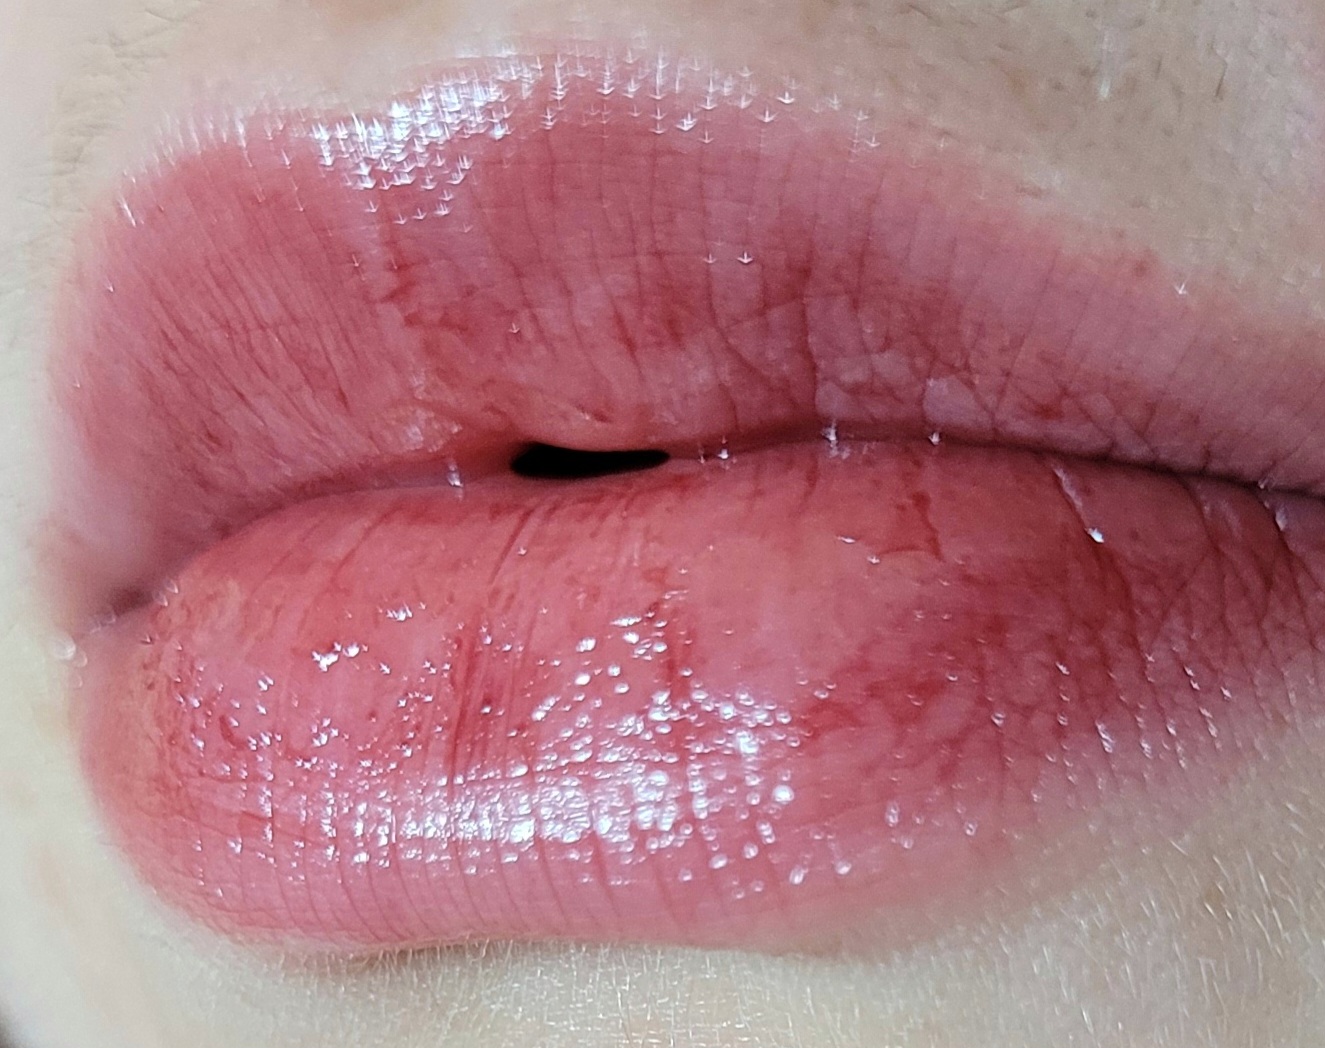 Clinique Almost Lipstick in Black Honey